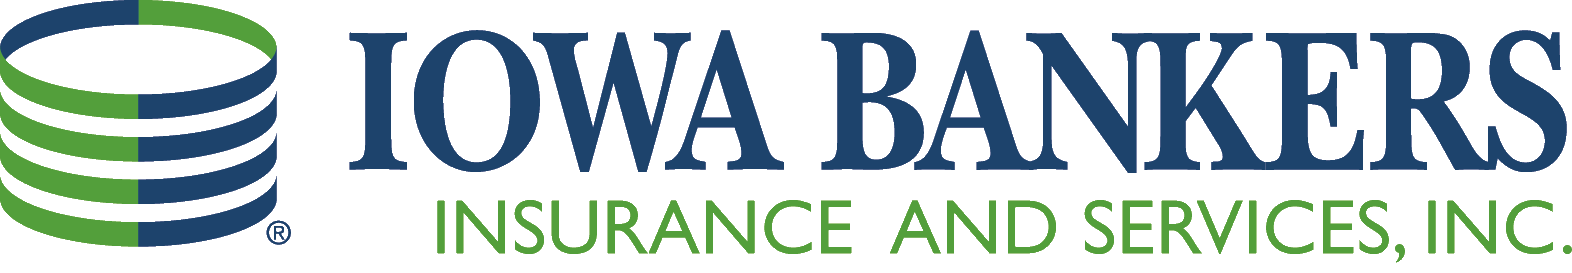 IBIS logo